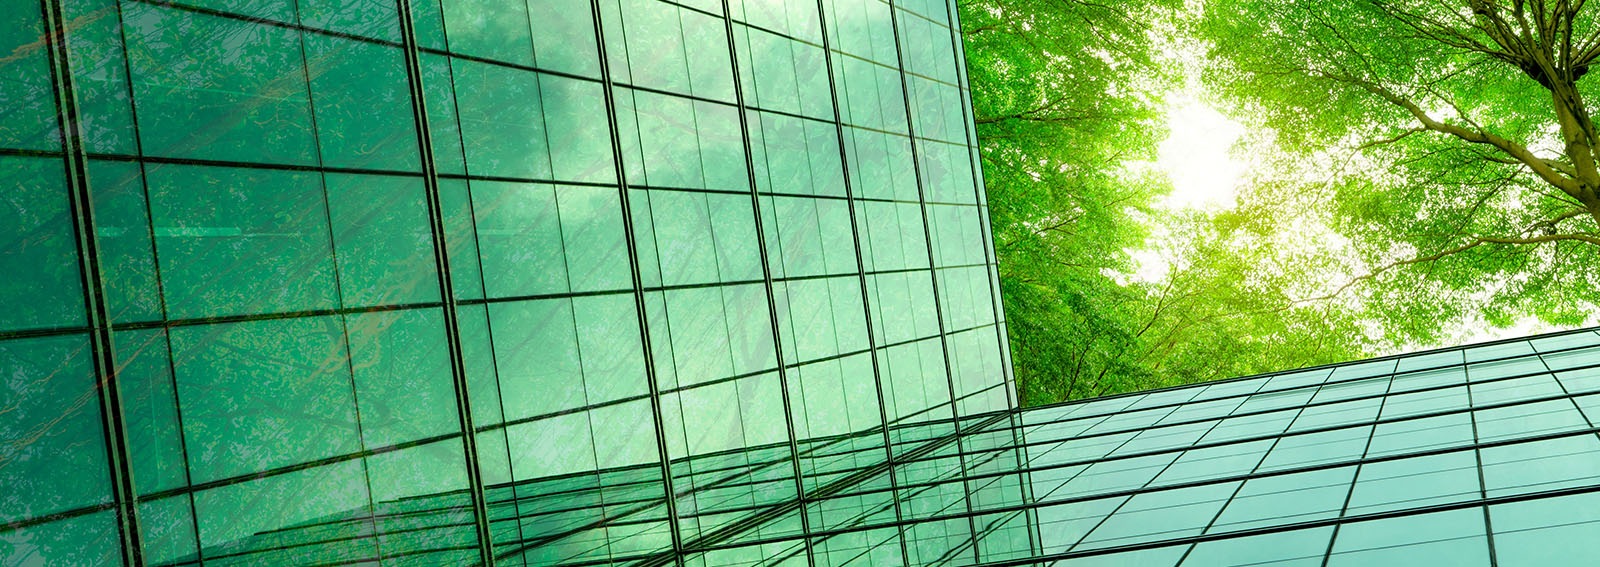 Bâtiment en verre moderne avec branches d'arbres verts et feuilles